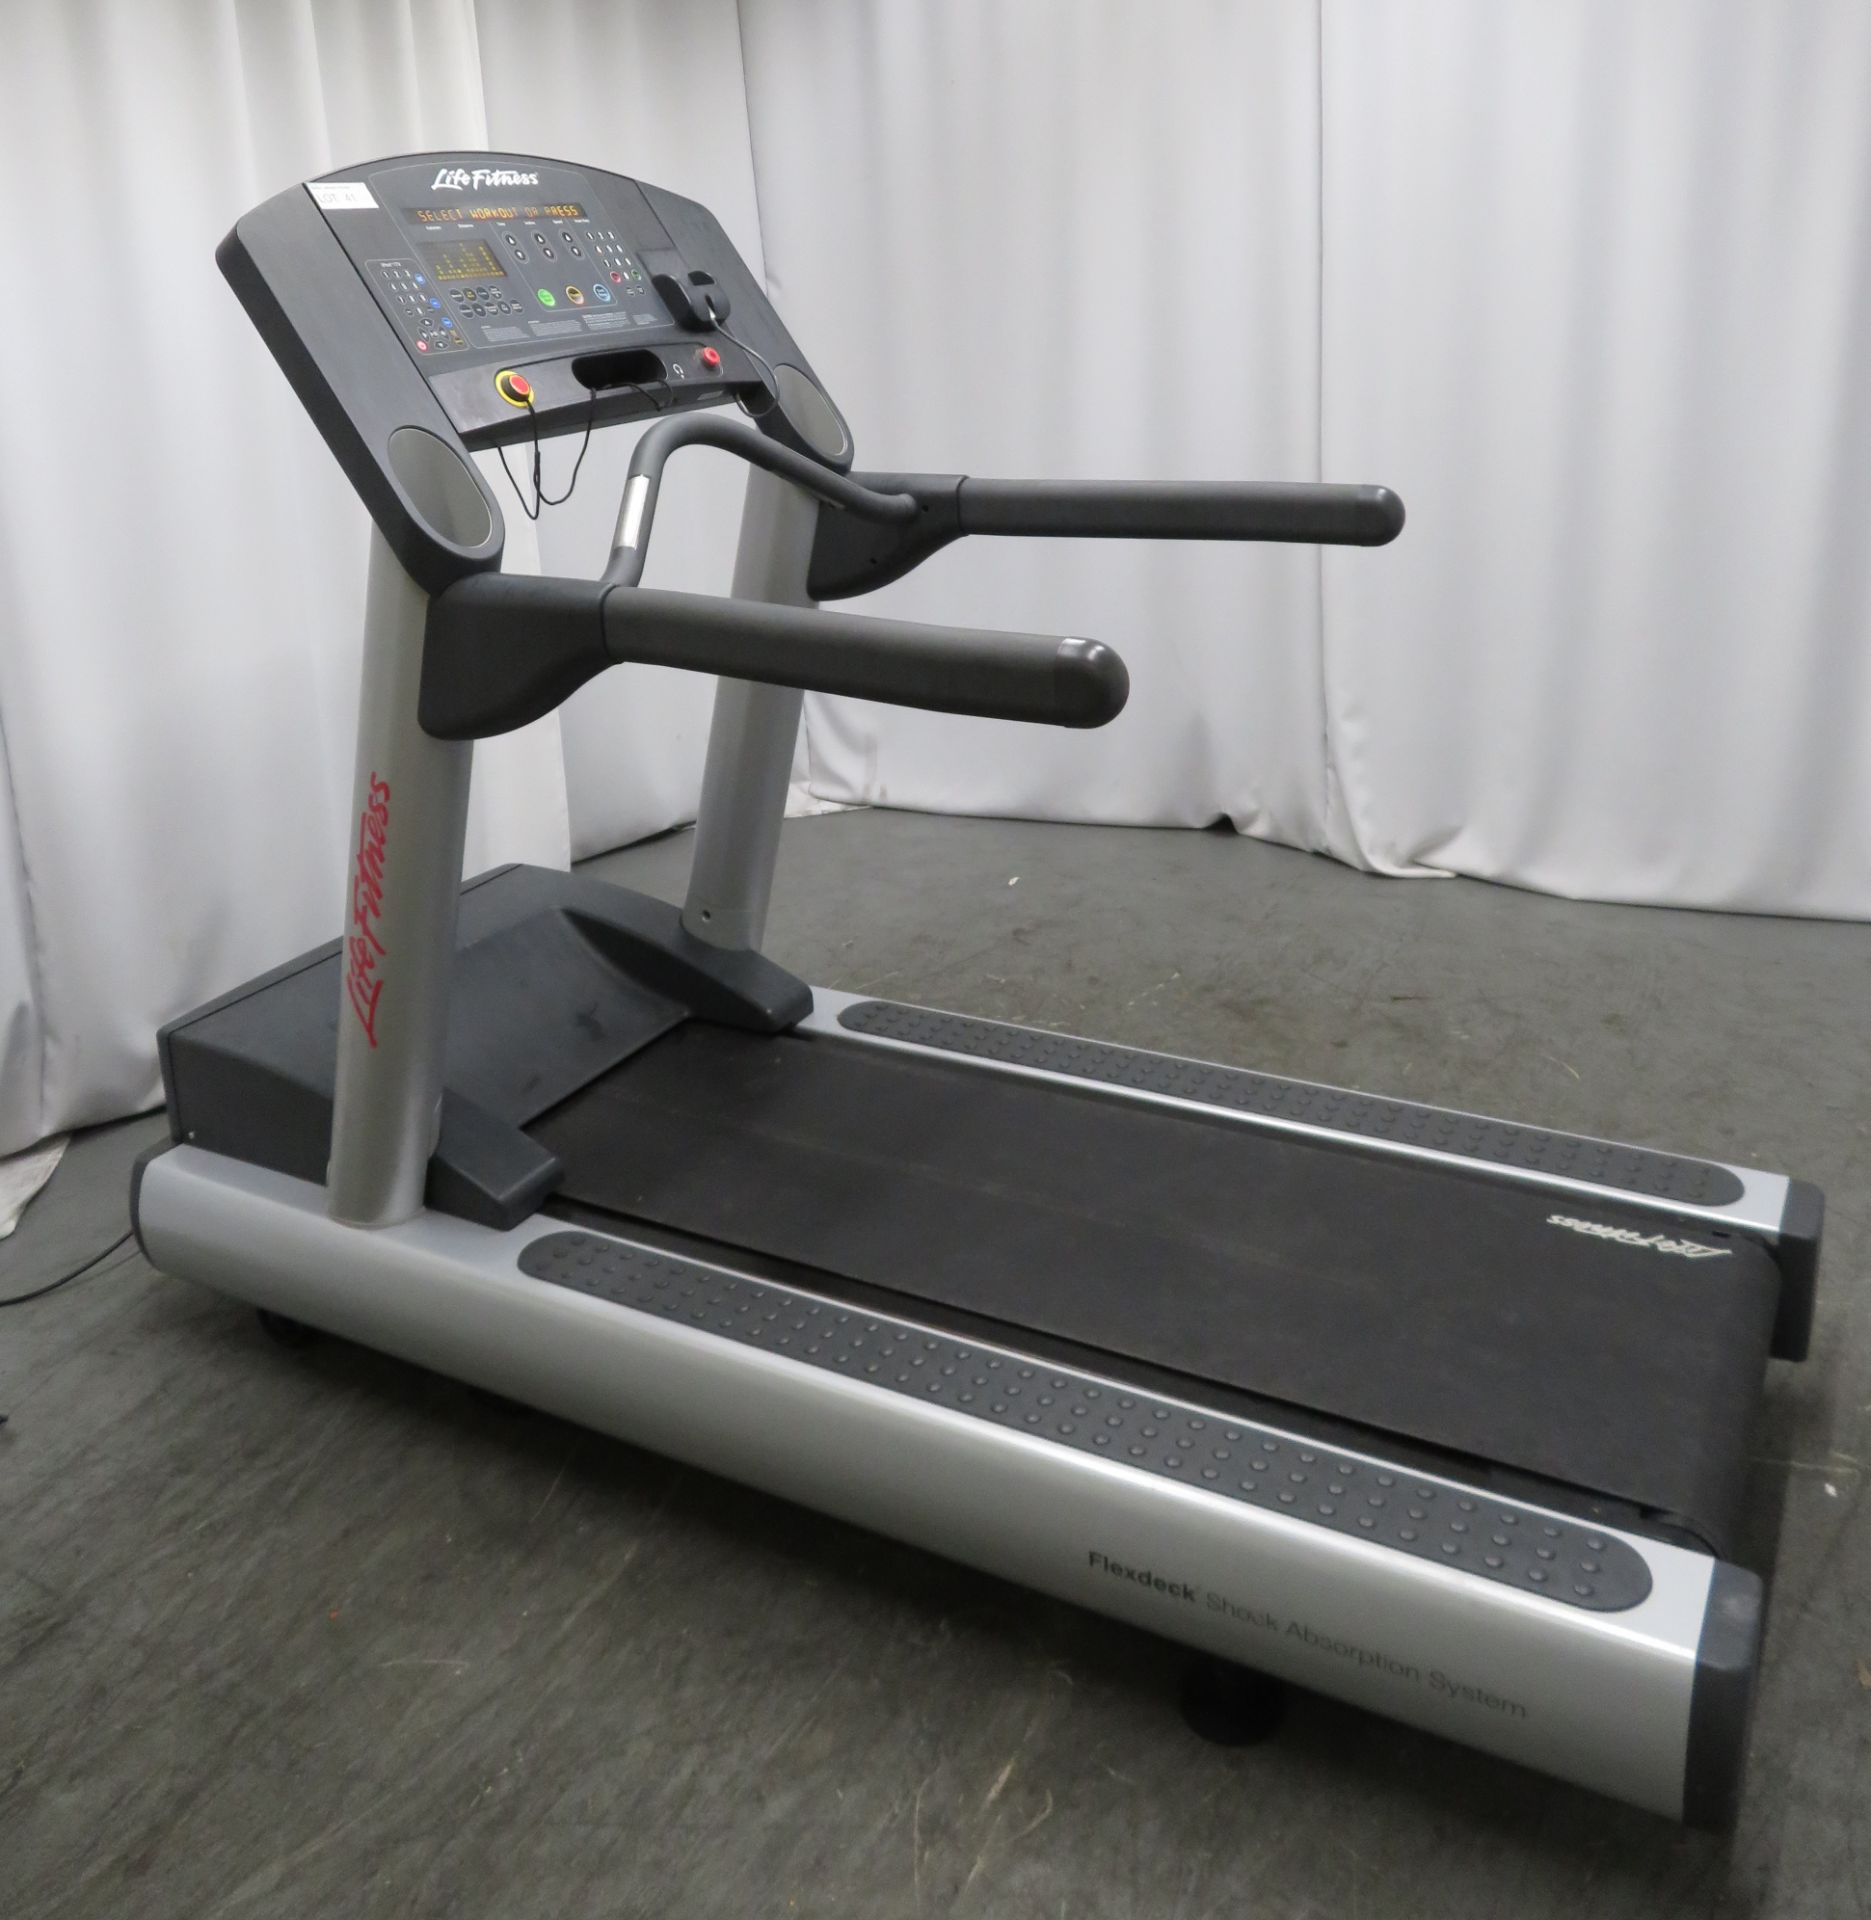 Life Fitness Flex Deck Treadmill. LED Display.